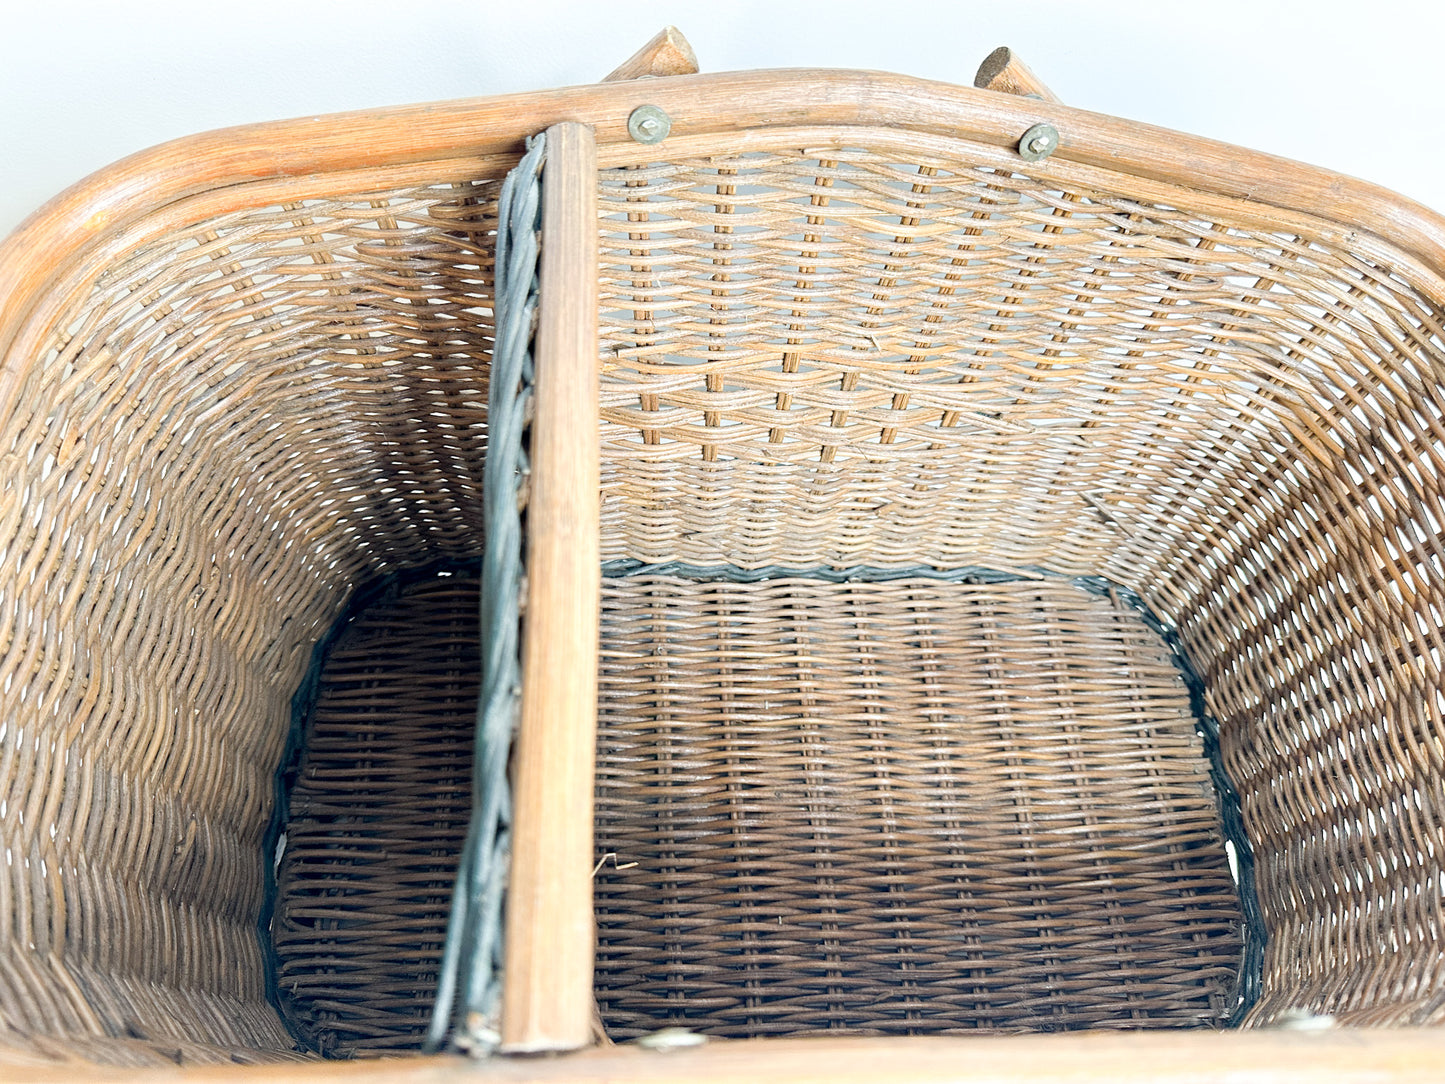 Vintage Picnic Basket | Vintage Wooden Handle Picnic Basket |